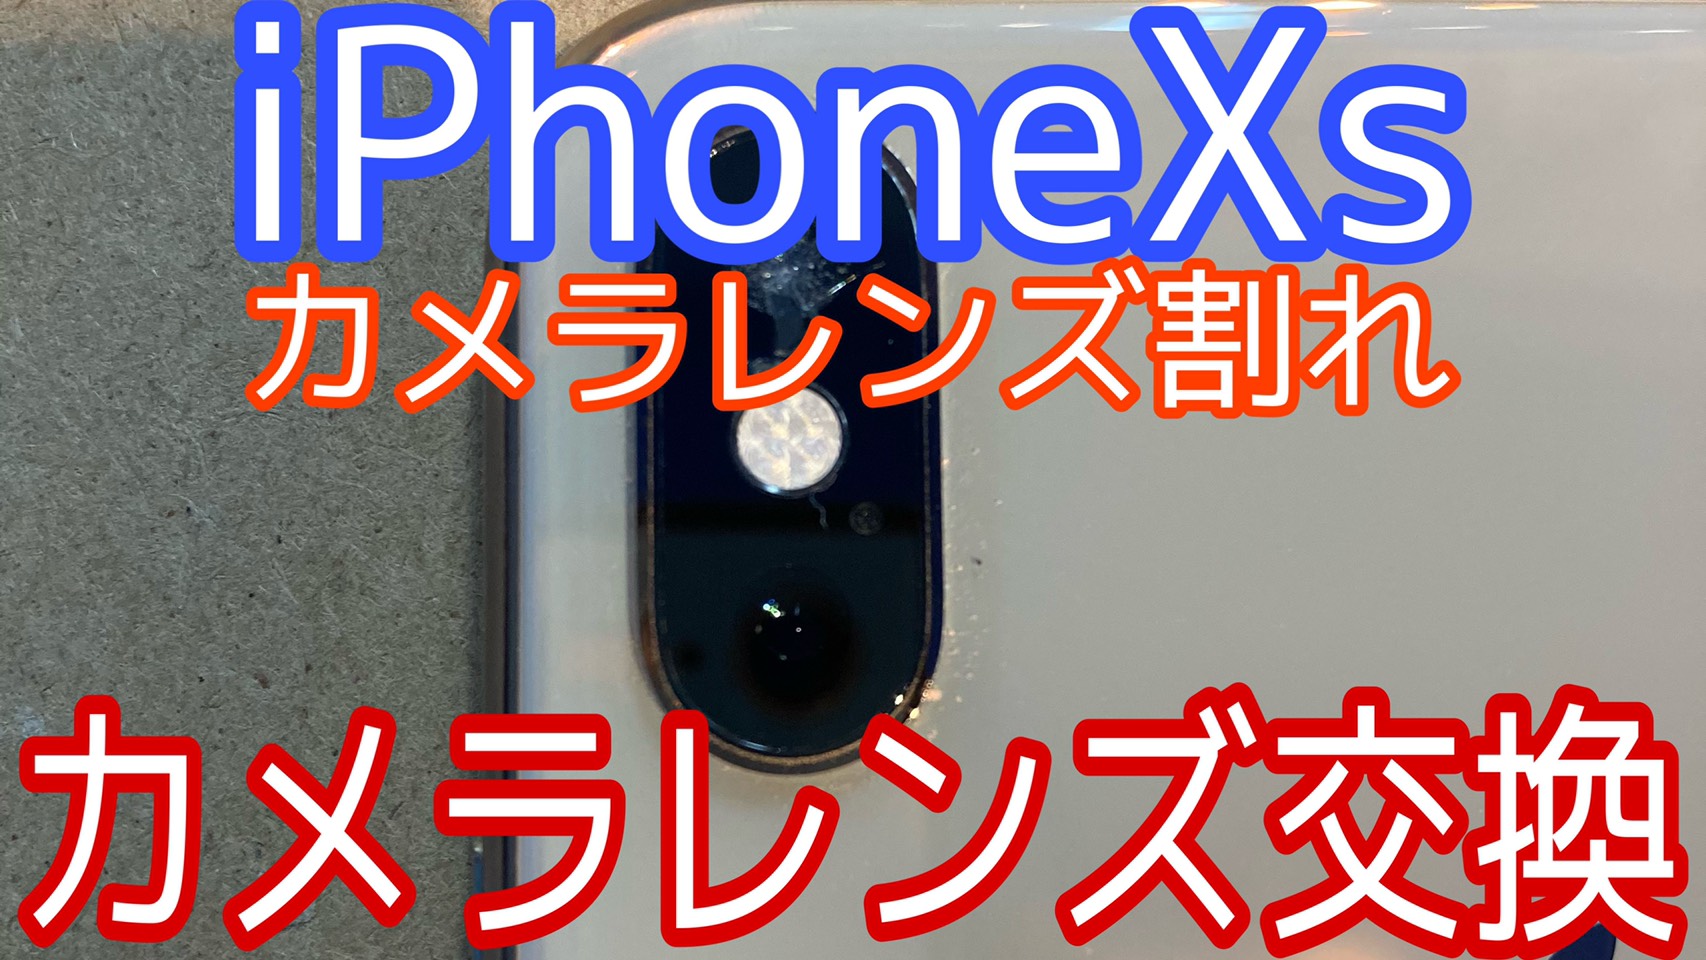 iPhoneXsアイキャッチ画像